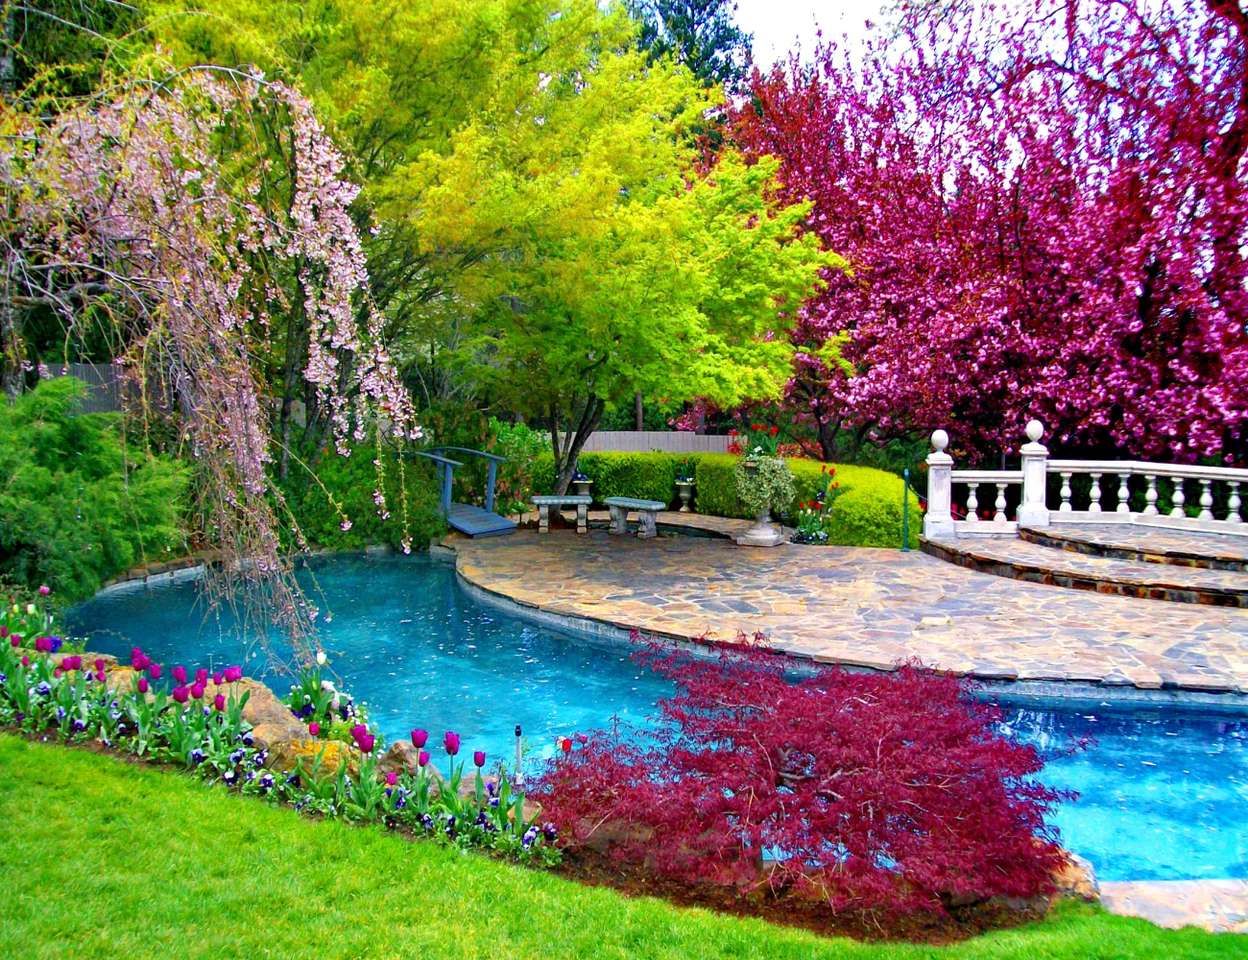 Τα χρώματα της φύσης σε έναν όμορφο κήπο παζλ online